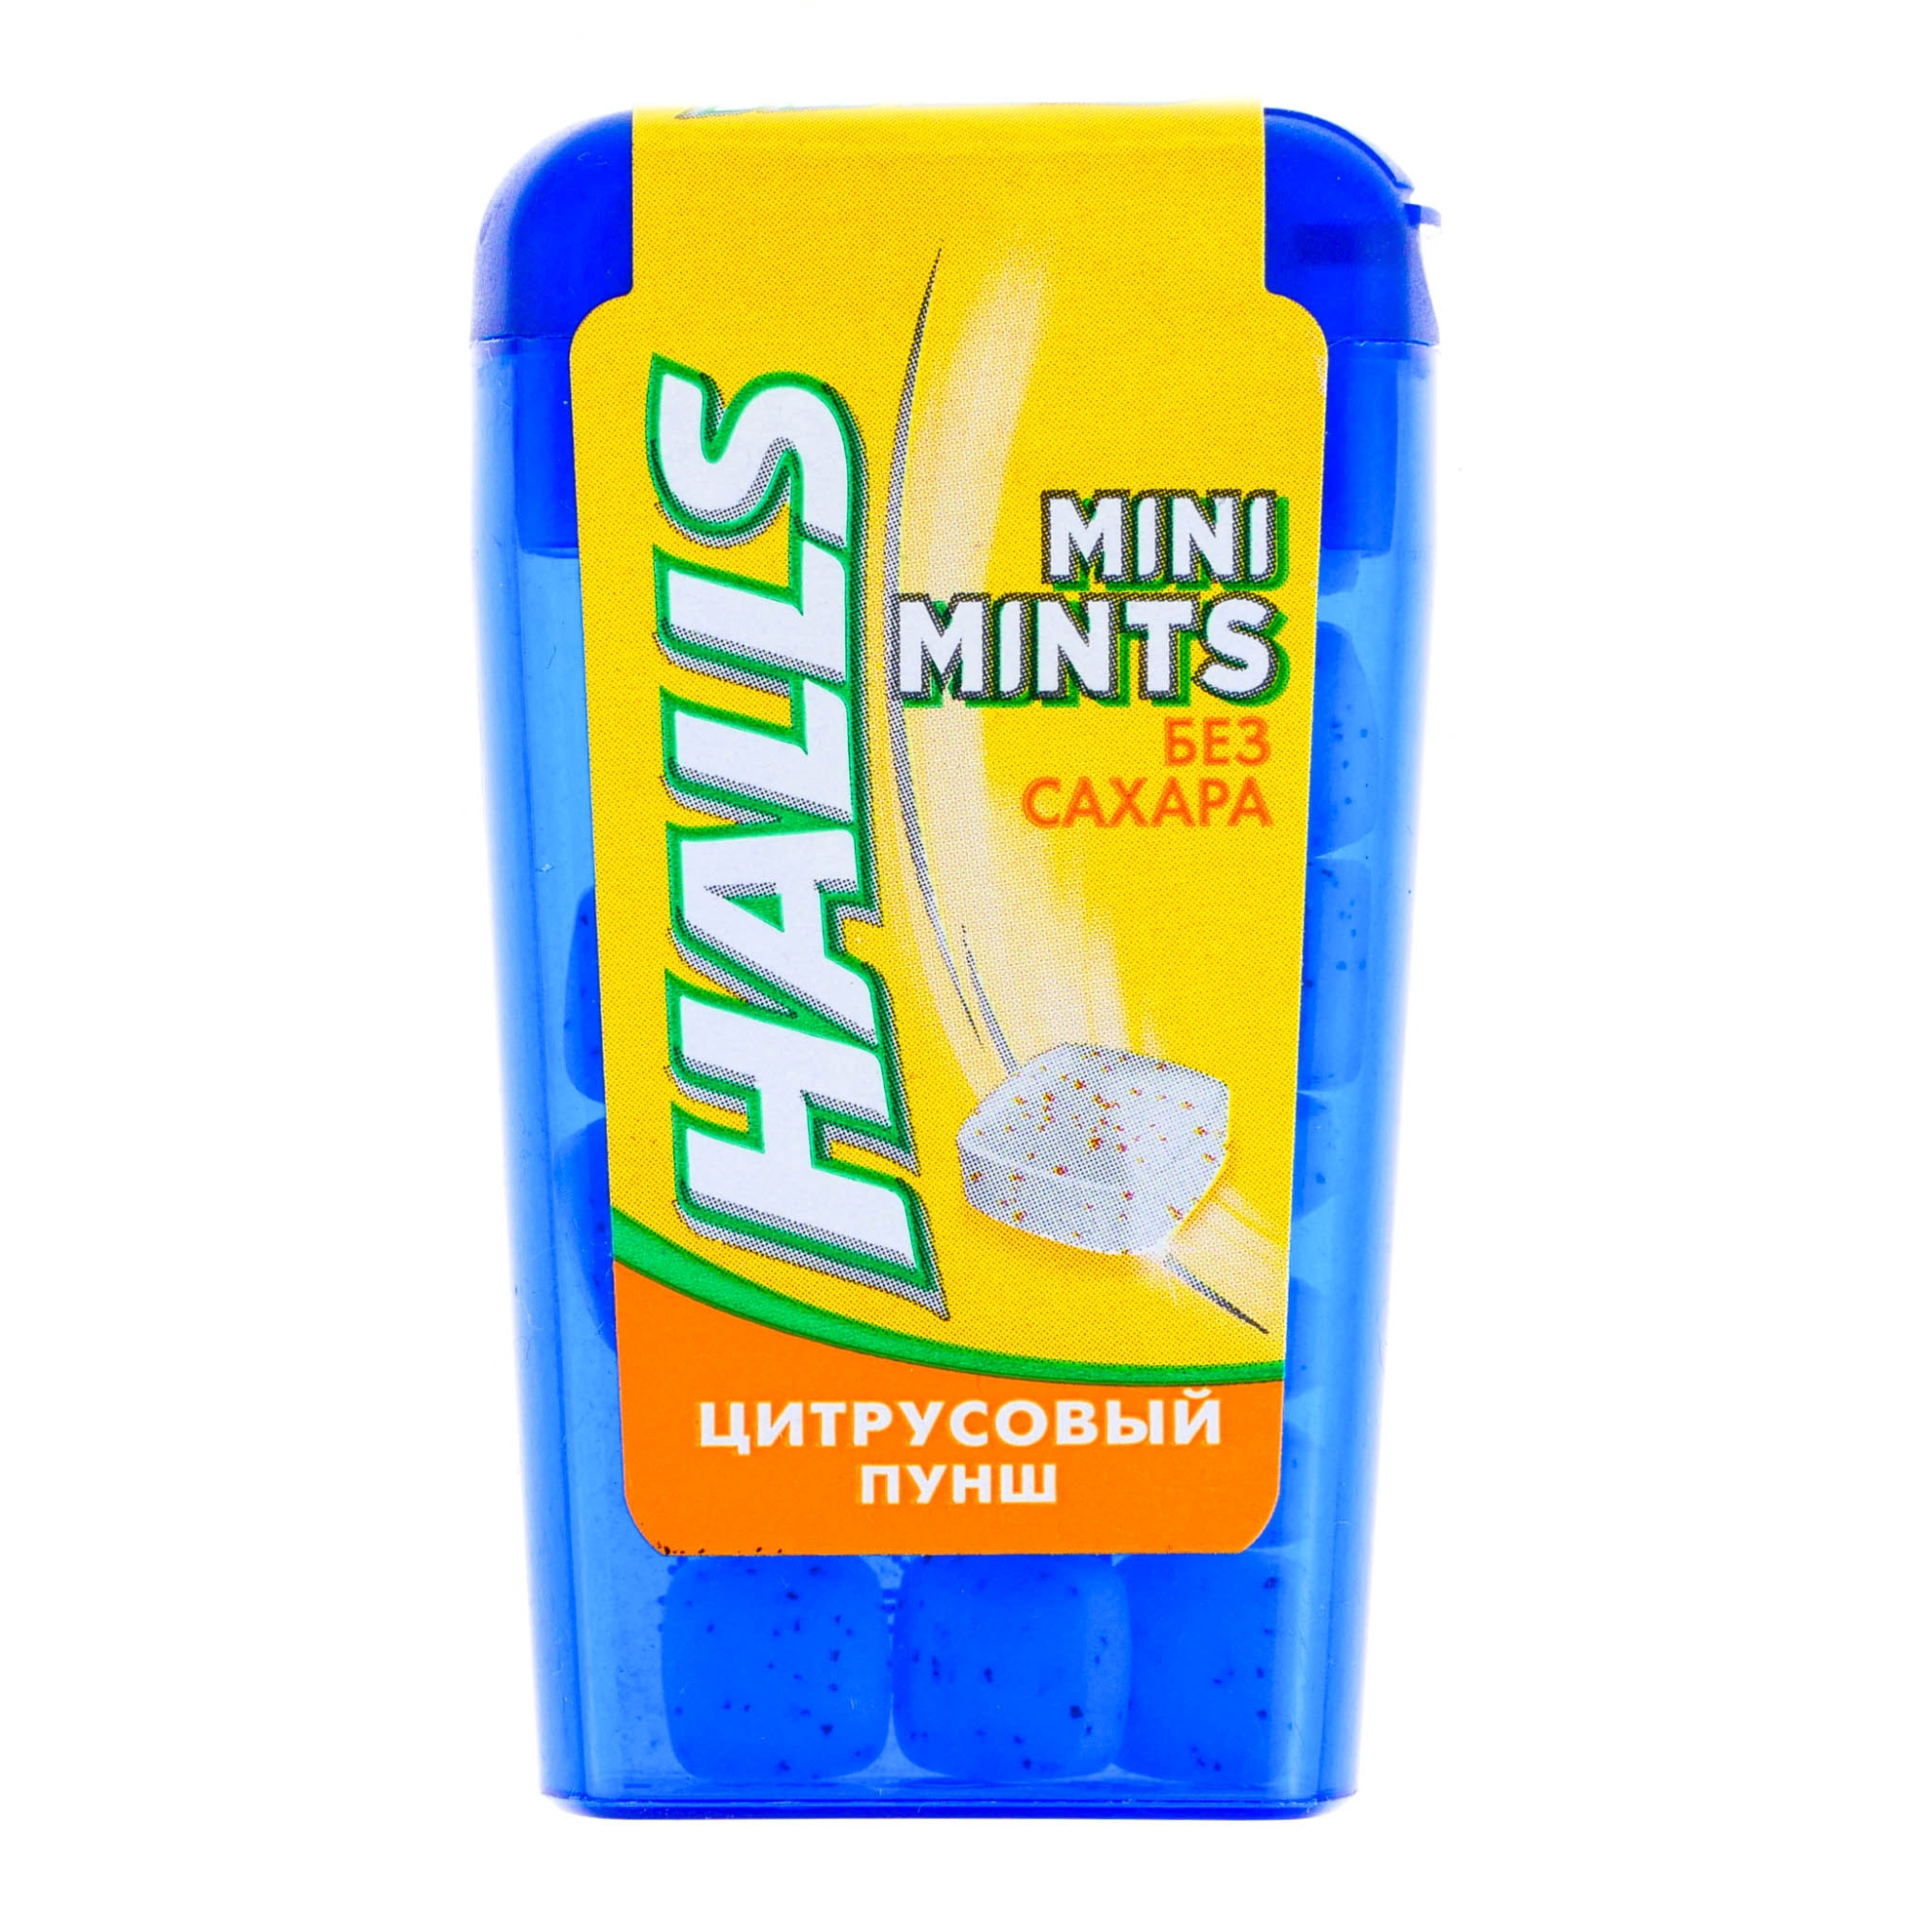 Конфеты Halls Mini Mints Цитрусовый пунш, 12,5 см леденцы halls mini mints цитрусовый пунш без сахара 12 г